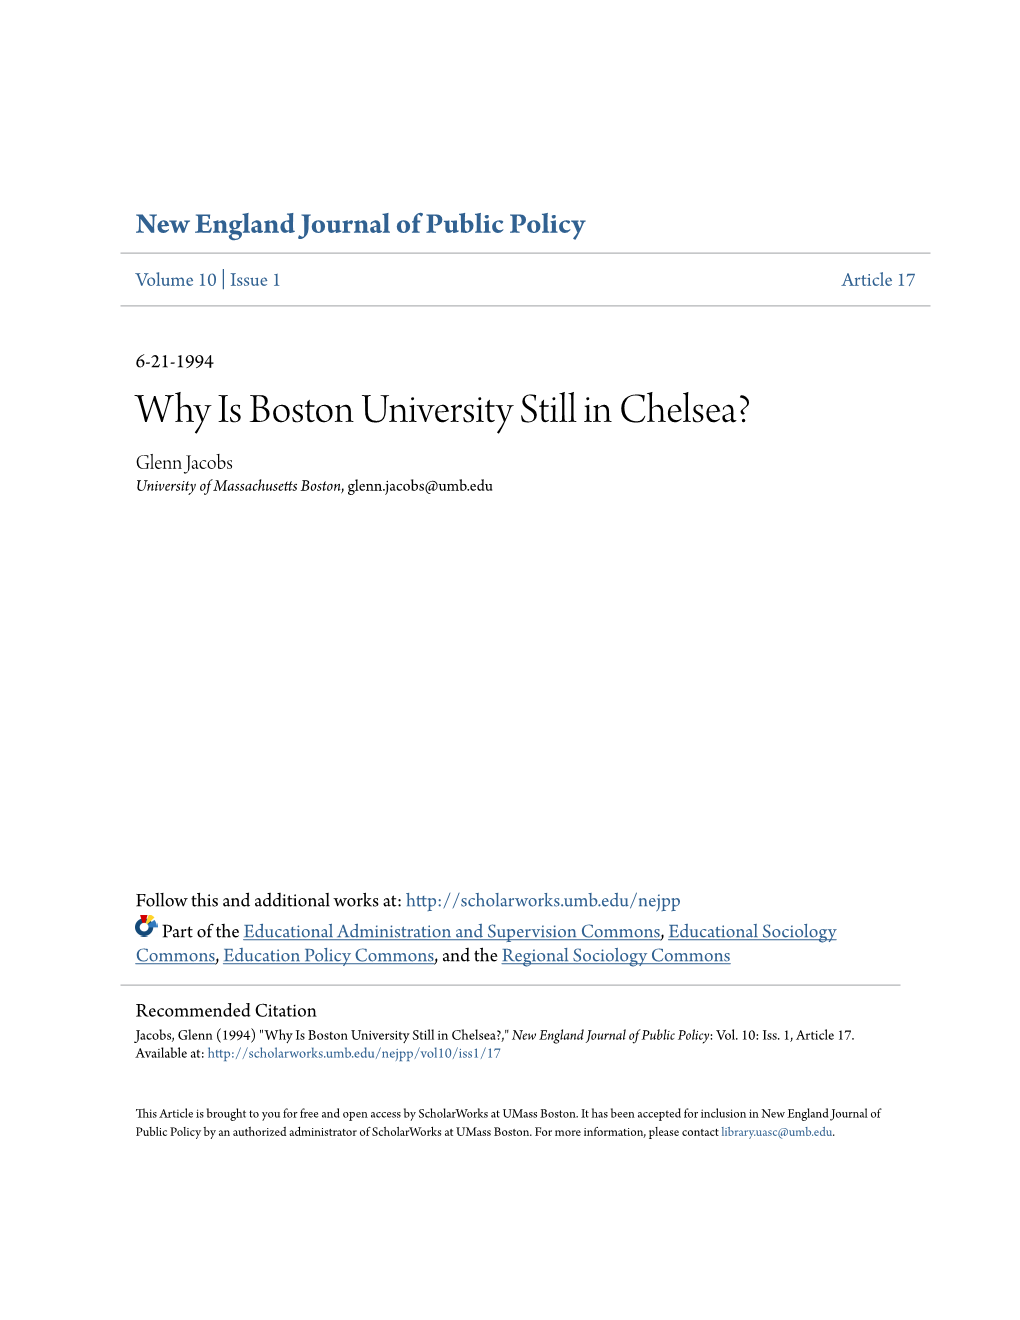 Why Is Boston University Still in Chelsea? Glenn Jacobs University of Massachusetts Boston, Glenn.Jacobs@Umb.Edu